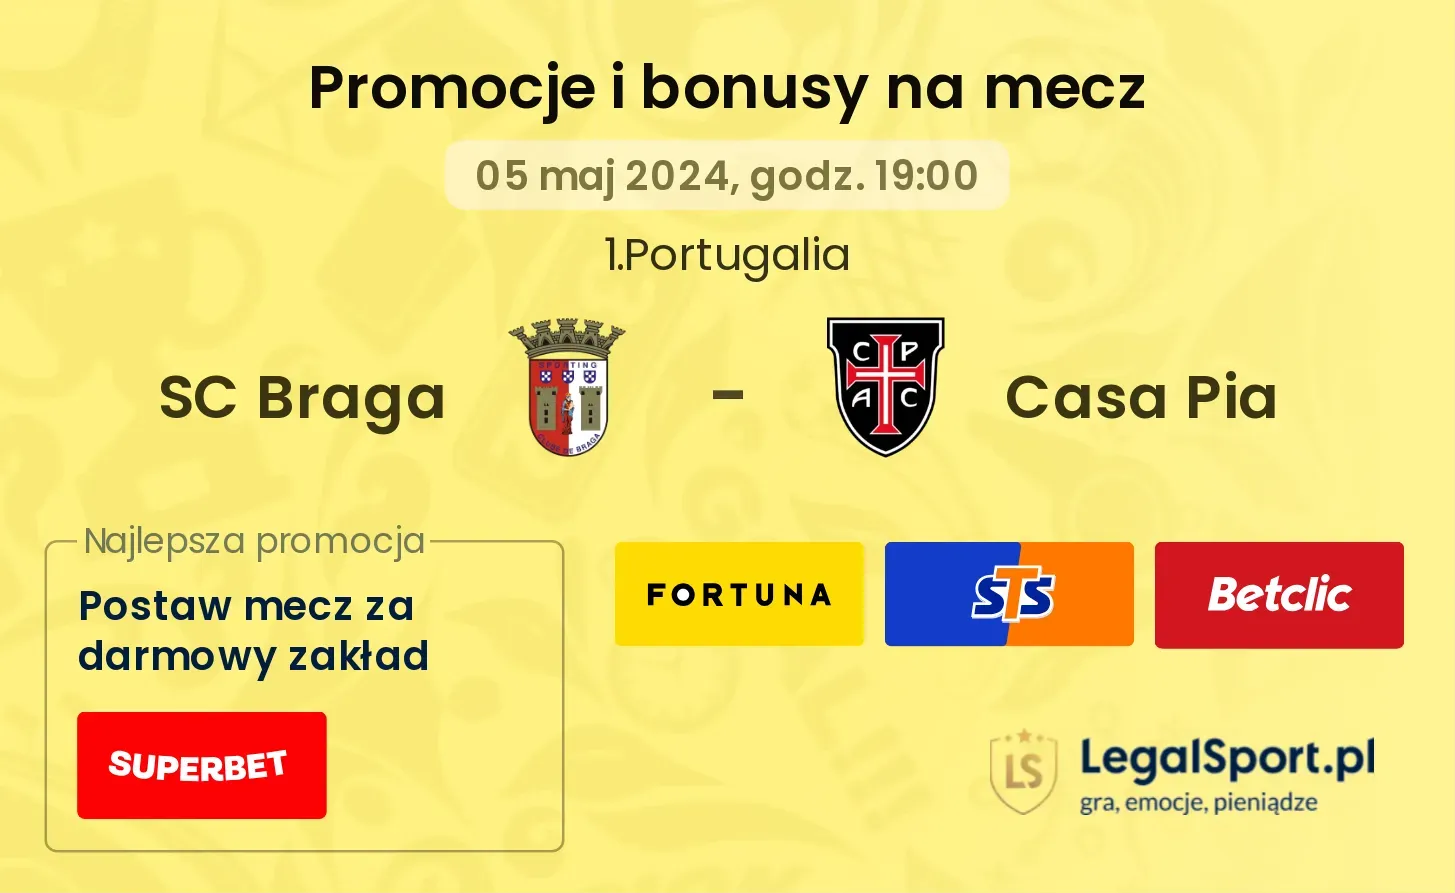 SC Braga - Casa Pia promocje bonusy na mecz